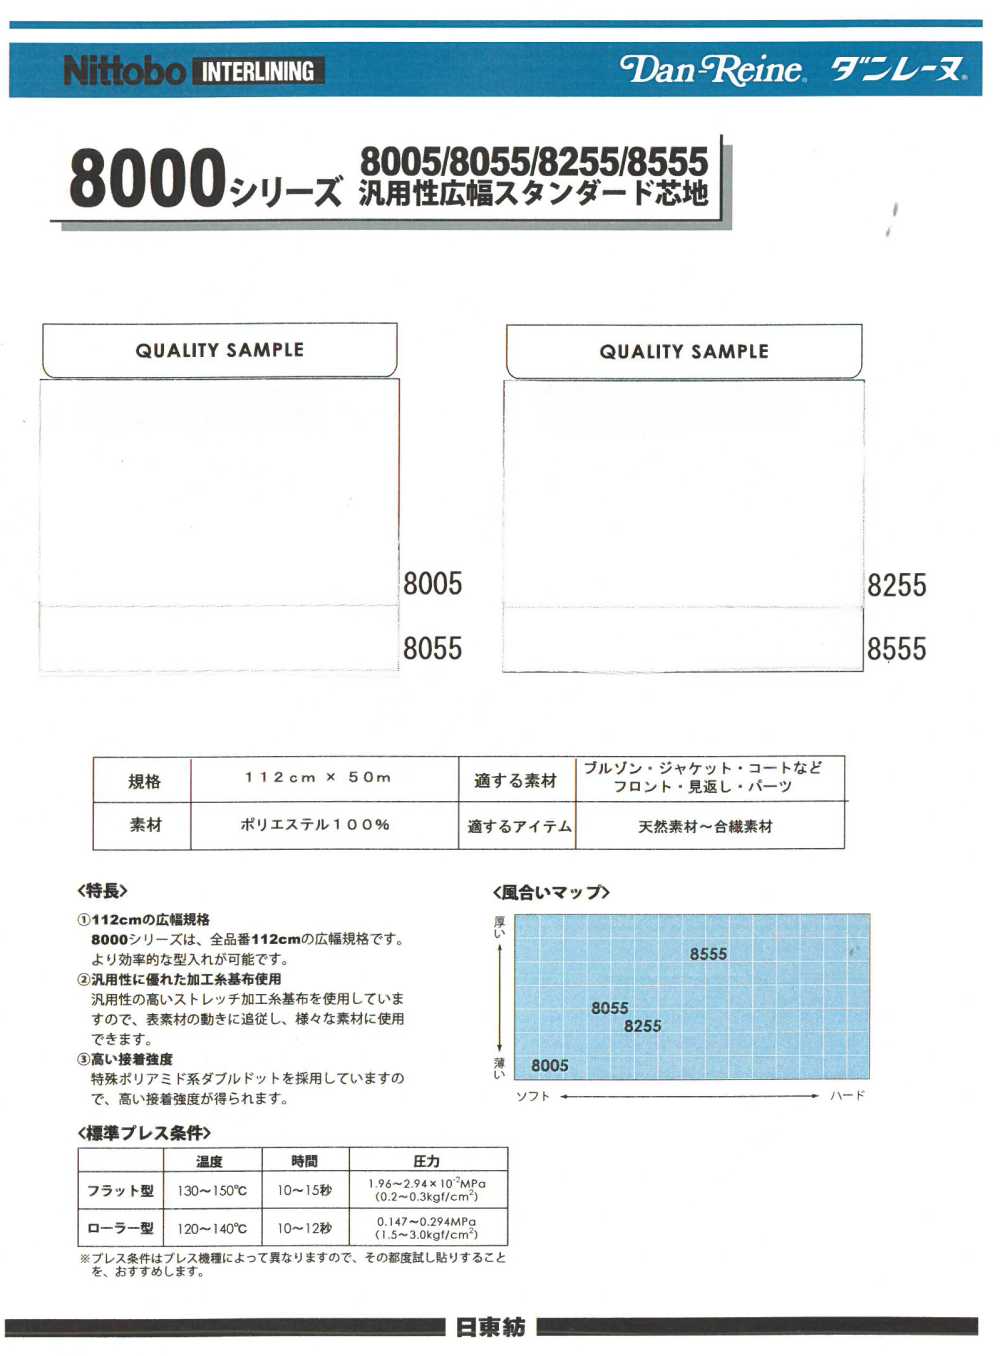 8555 8000シリーズ 汎用性広幅スタンダード芯地 日東紡インターライニング